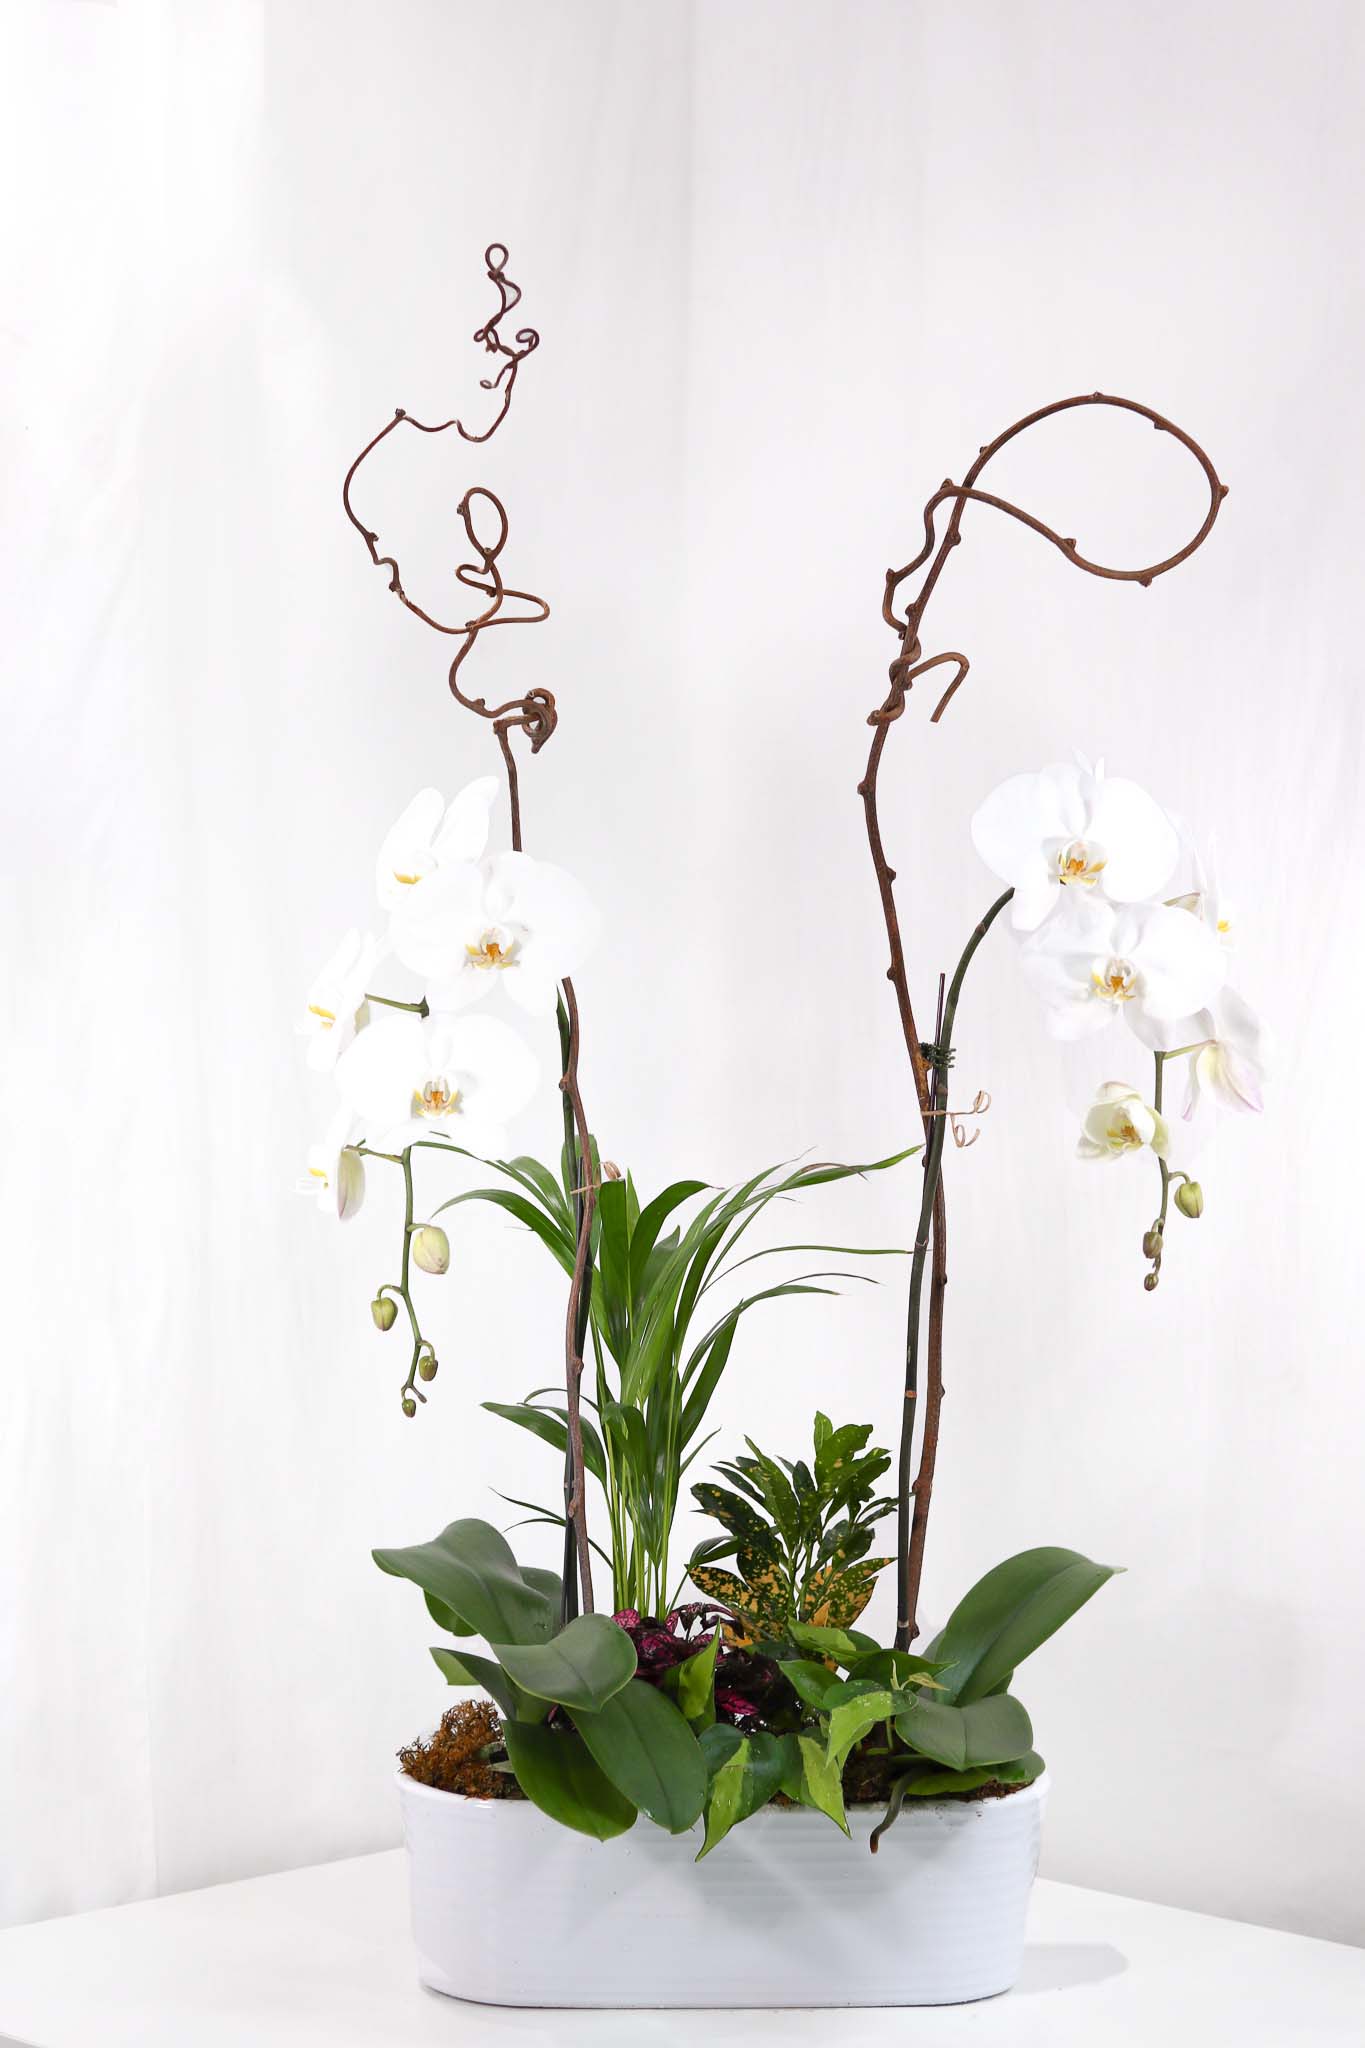 Floral White Orchid Arrangement